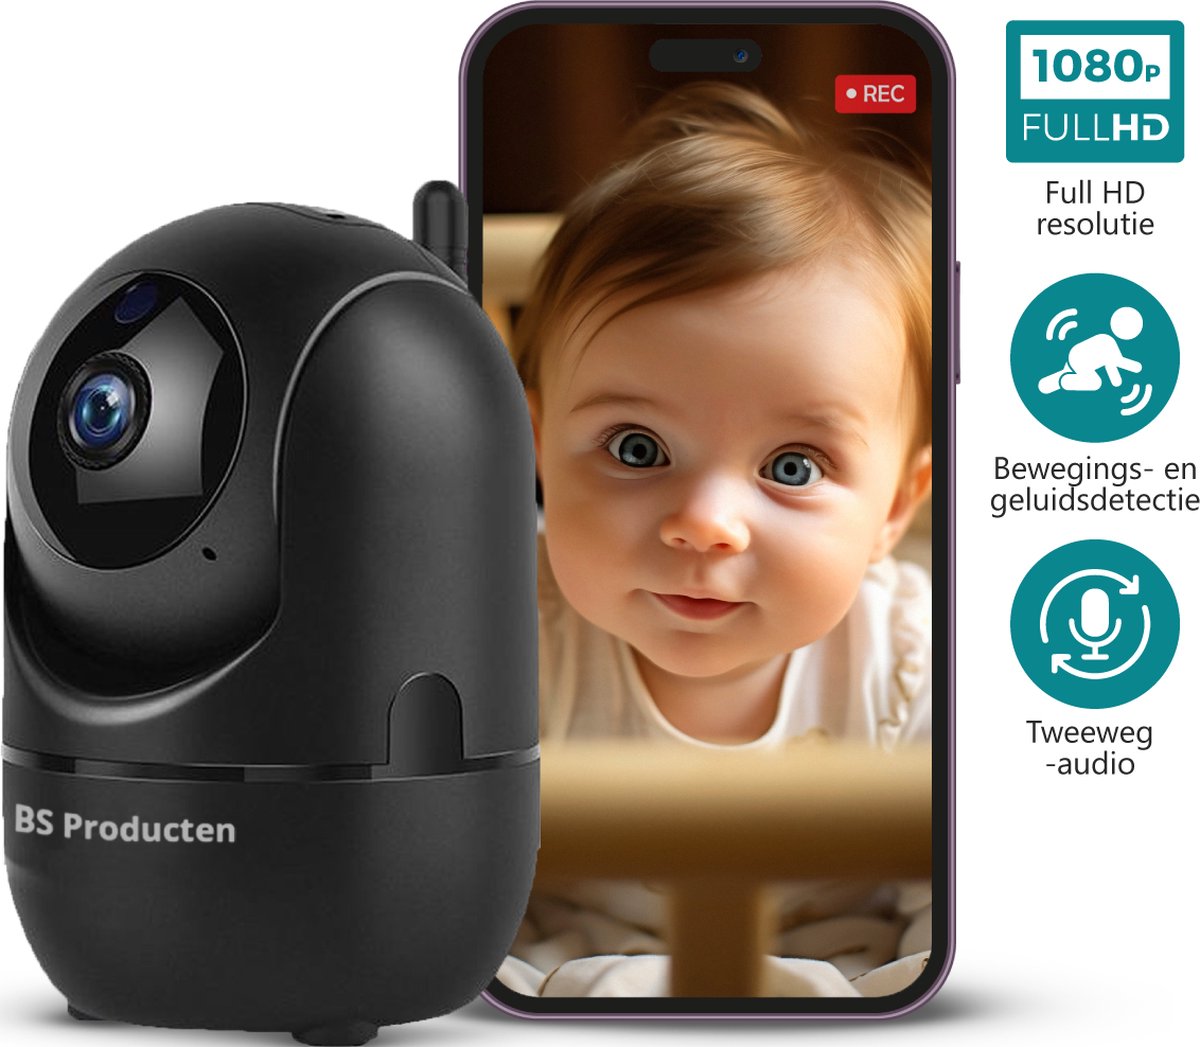 Babyfoon met Camera en App - WiFi - FULL HD - Baby Monitor - Baby Camera - Babyfoons met Beweeg en Geluidsdetectie - Indoor - Night Vision for Baby/Nanny - Bestverkocht - Zwart - BS Producten